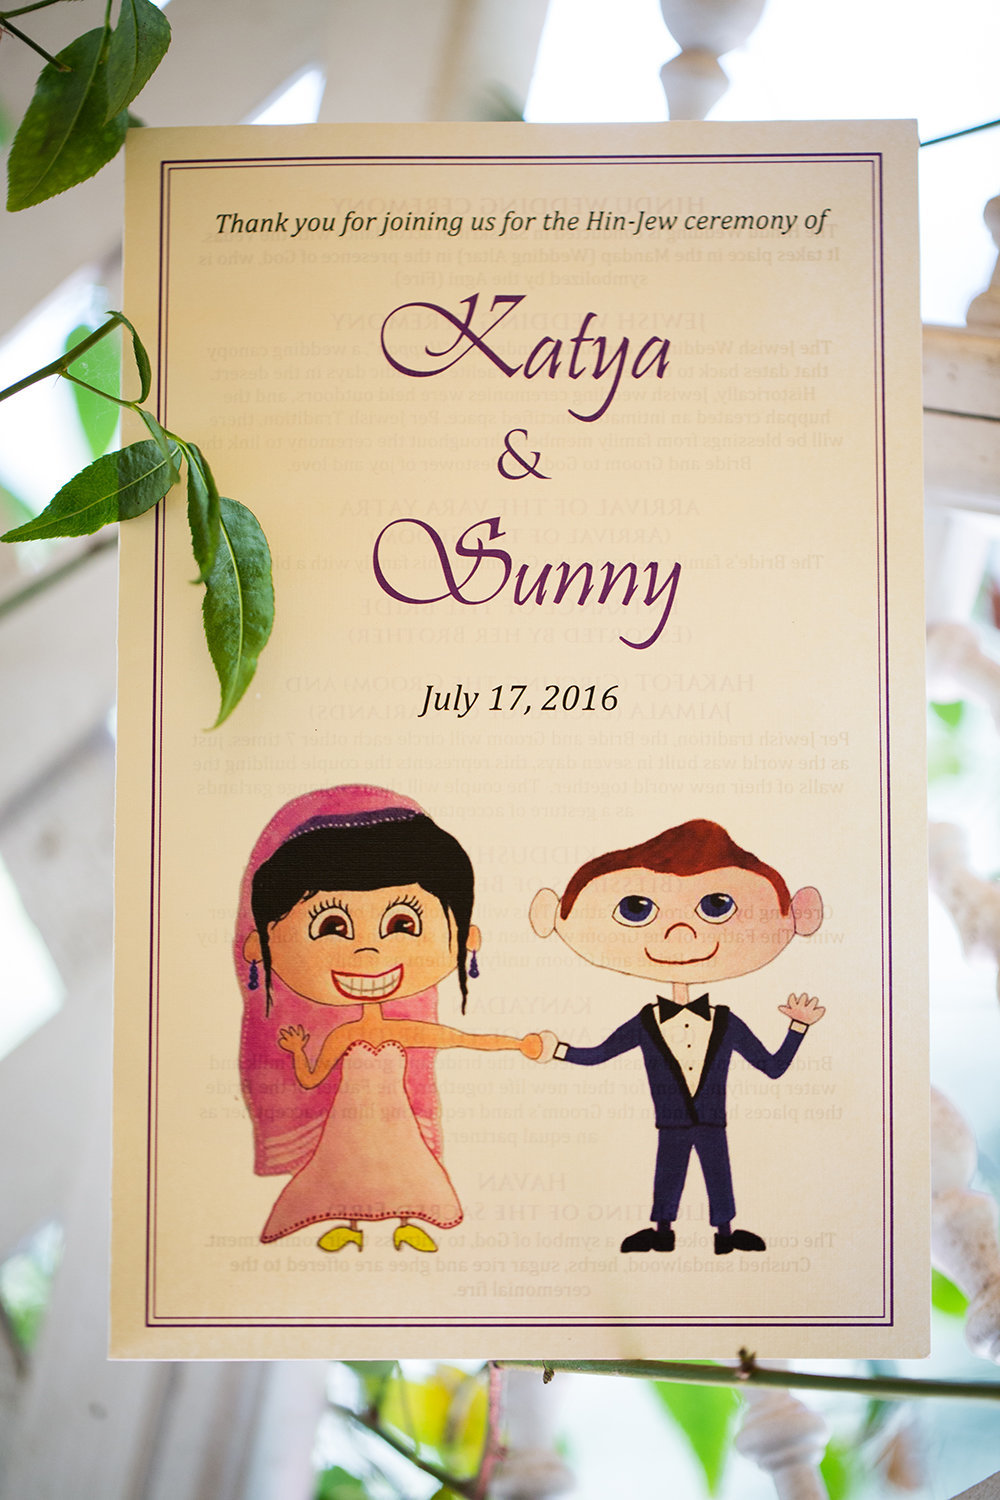 Cute wedding program for a Hindu wedding ceremony